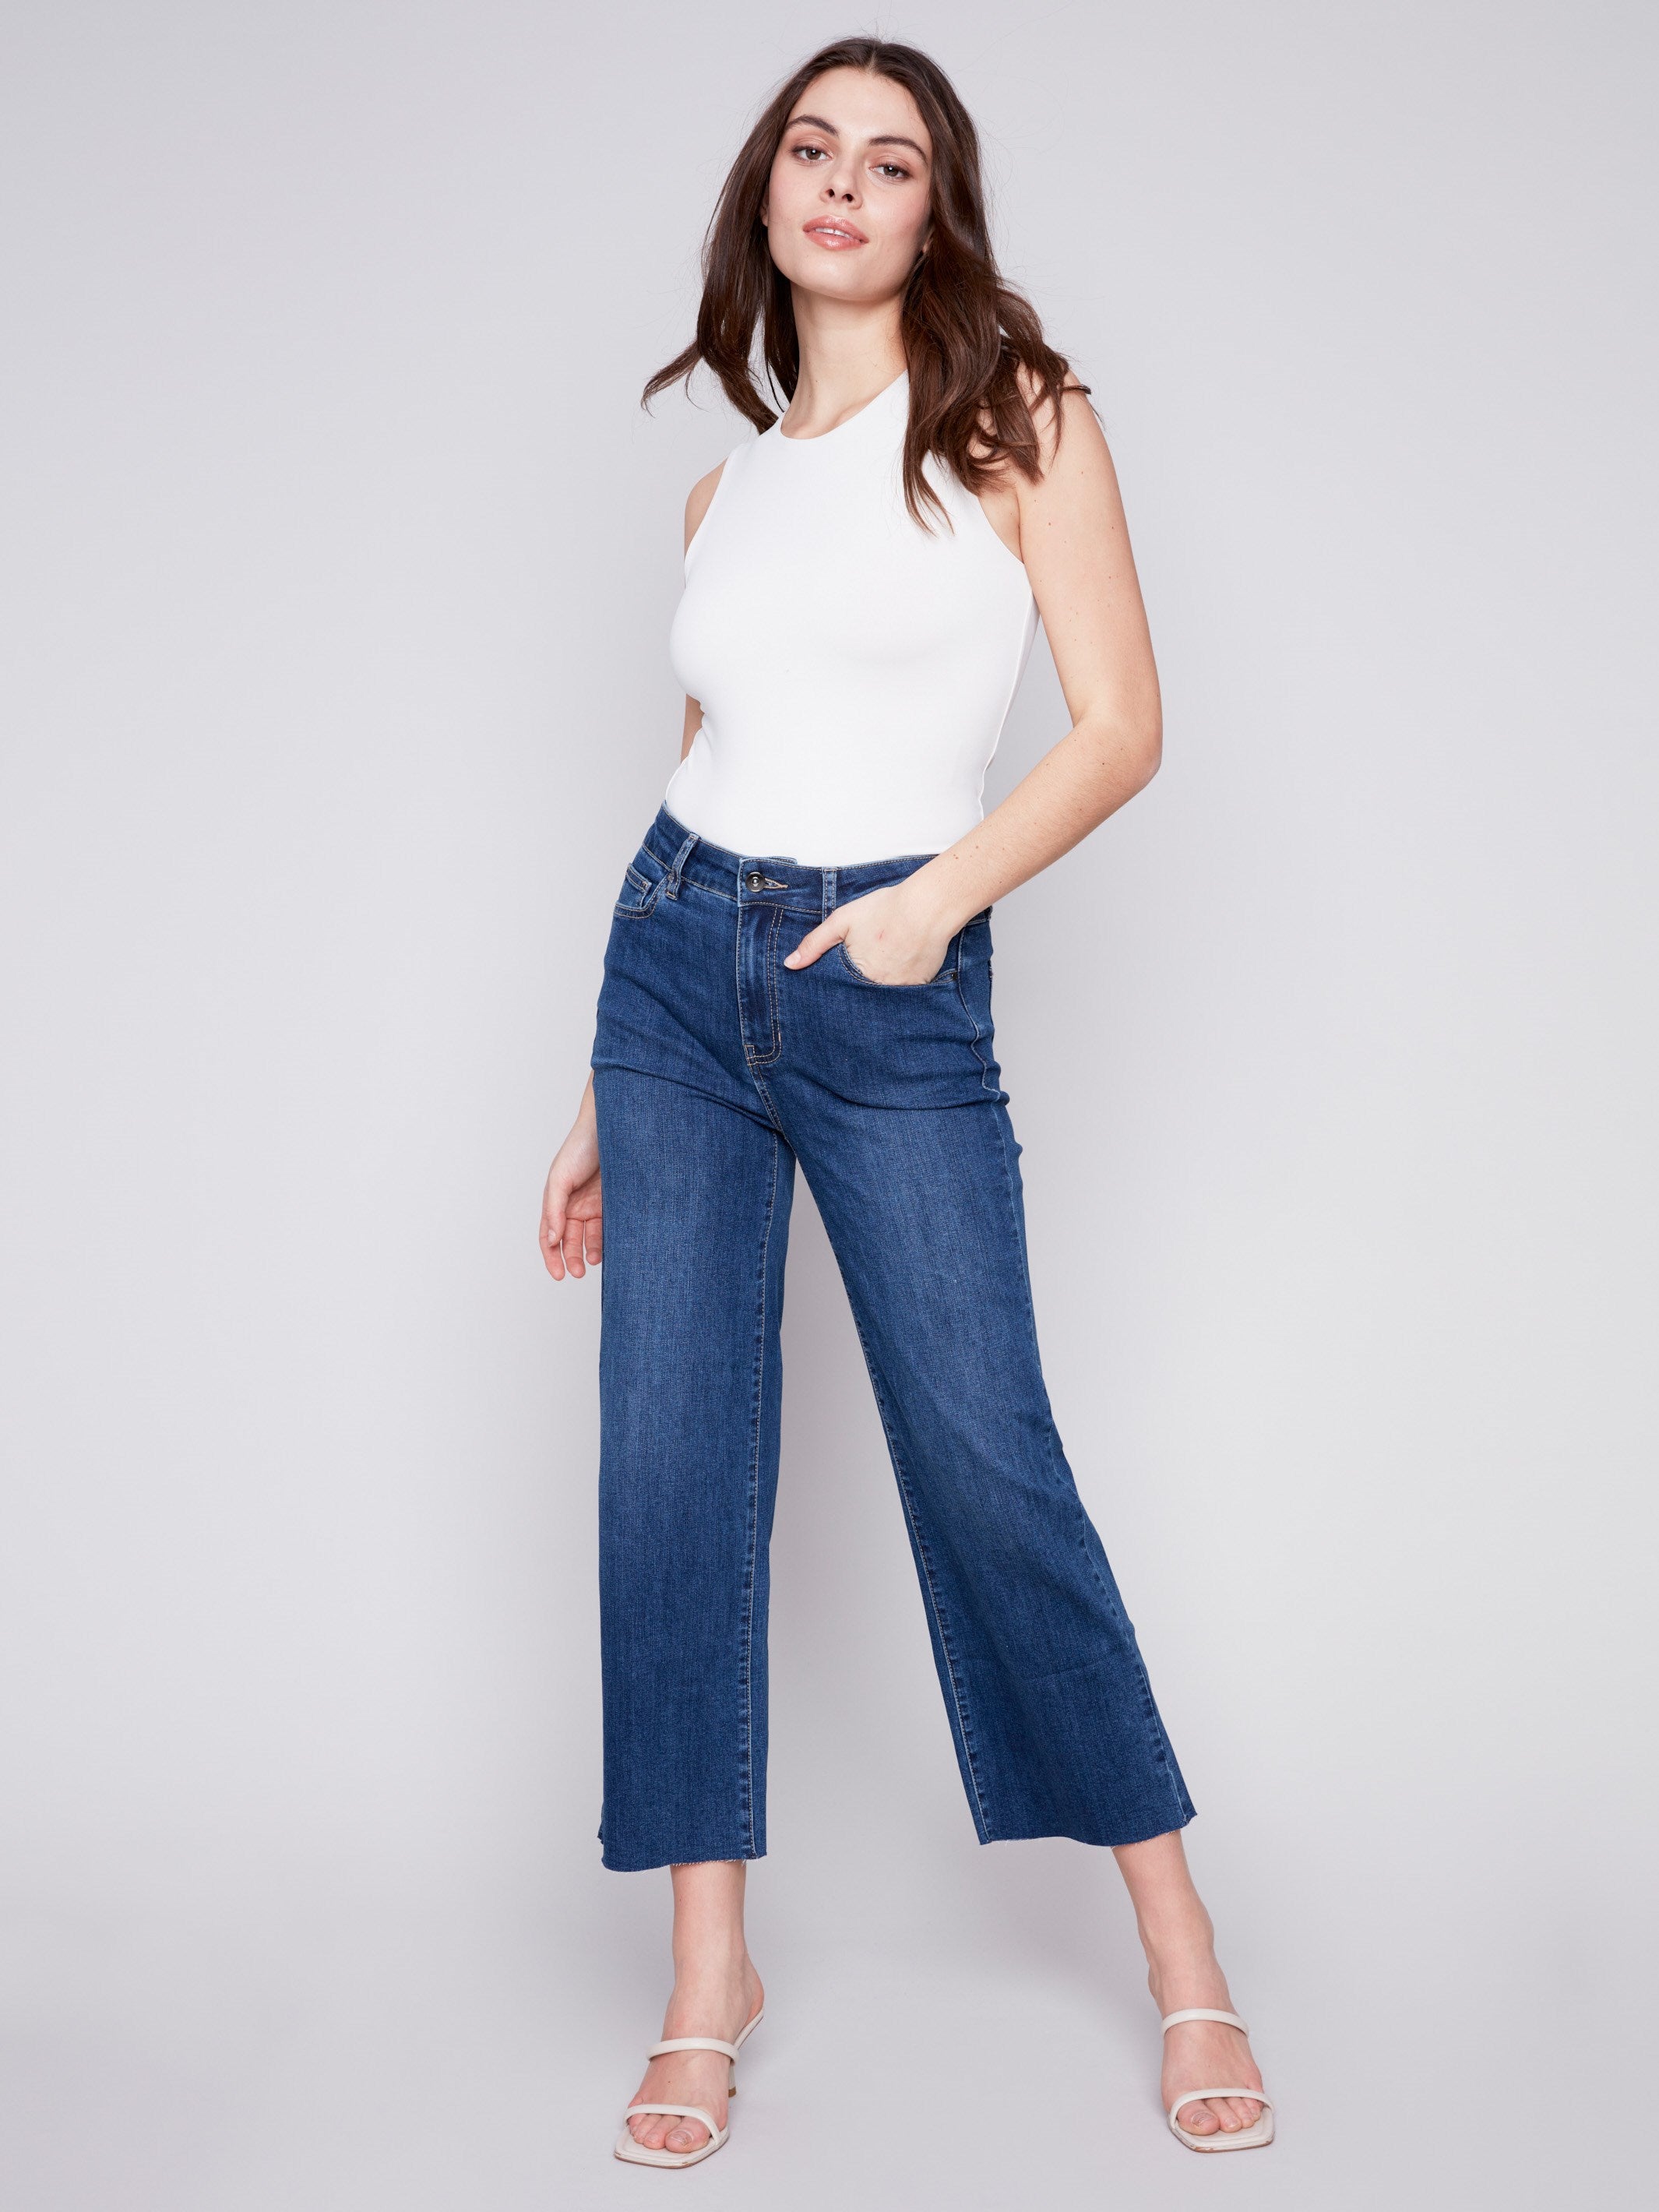 Vtg Def Jam University Womens Capris Size 9/10 Blue Denim Jeans 30x20”  Inseam